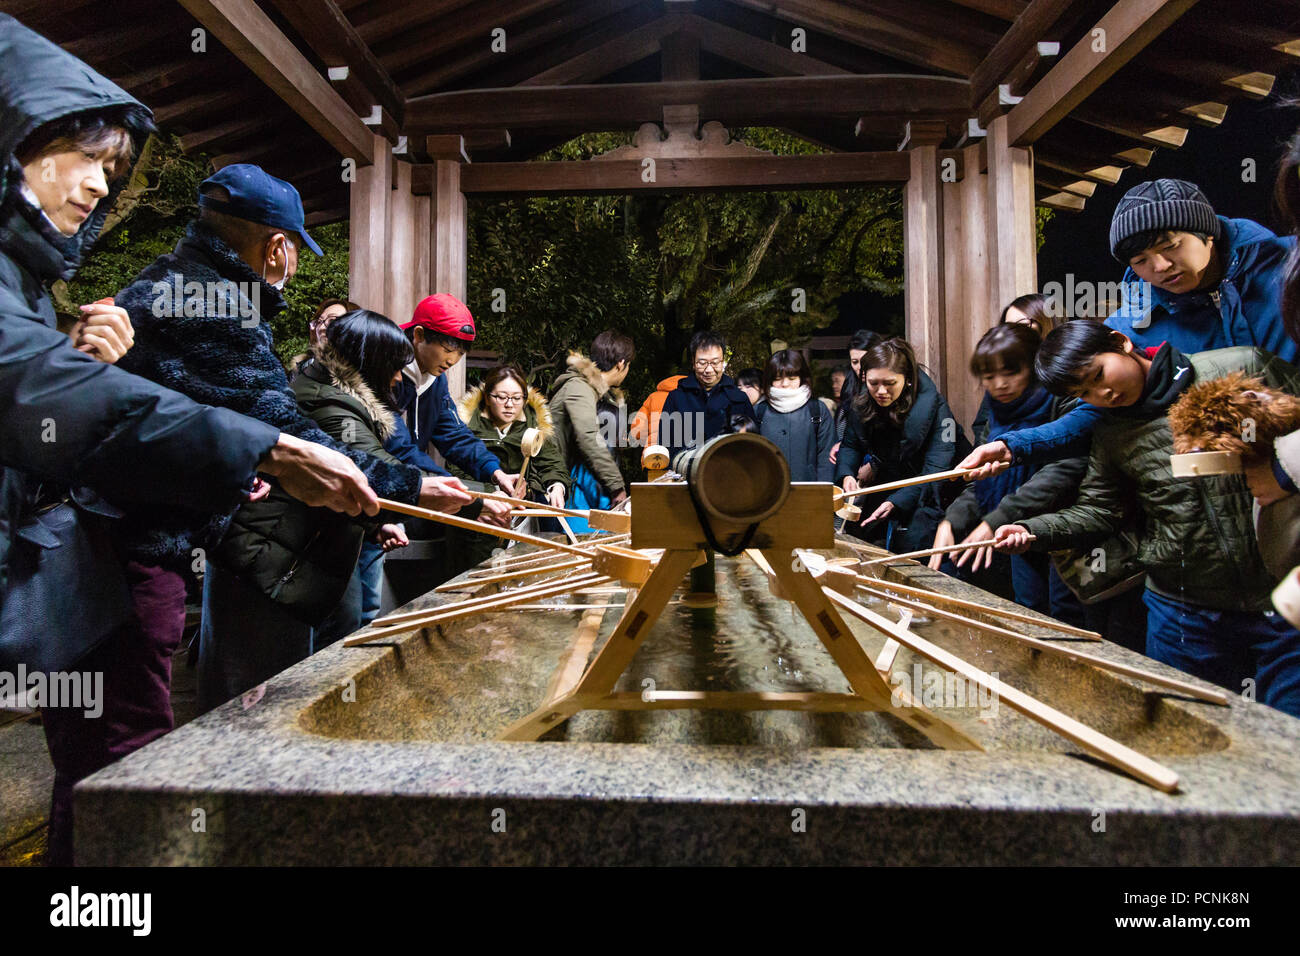 Shogatsu, Neues Jahr, Nishinomiya Shinto Schrein, Japan. Reinigung von Waschbecken, chozuya, um Mitternacht mit Menschen ankommen für Hatsumode, erster Besuch verpackt. Stockfoto